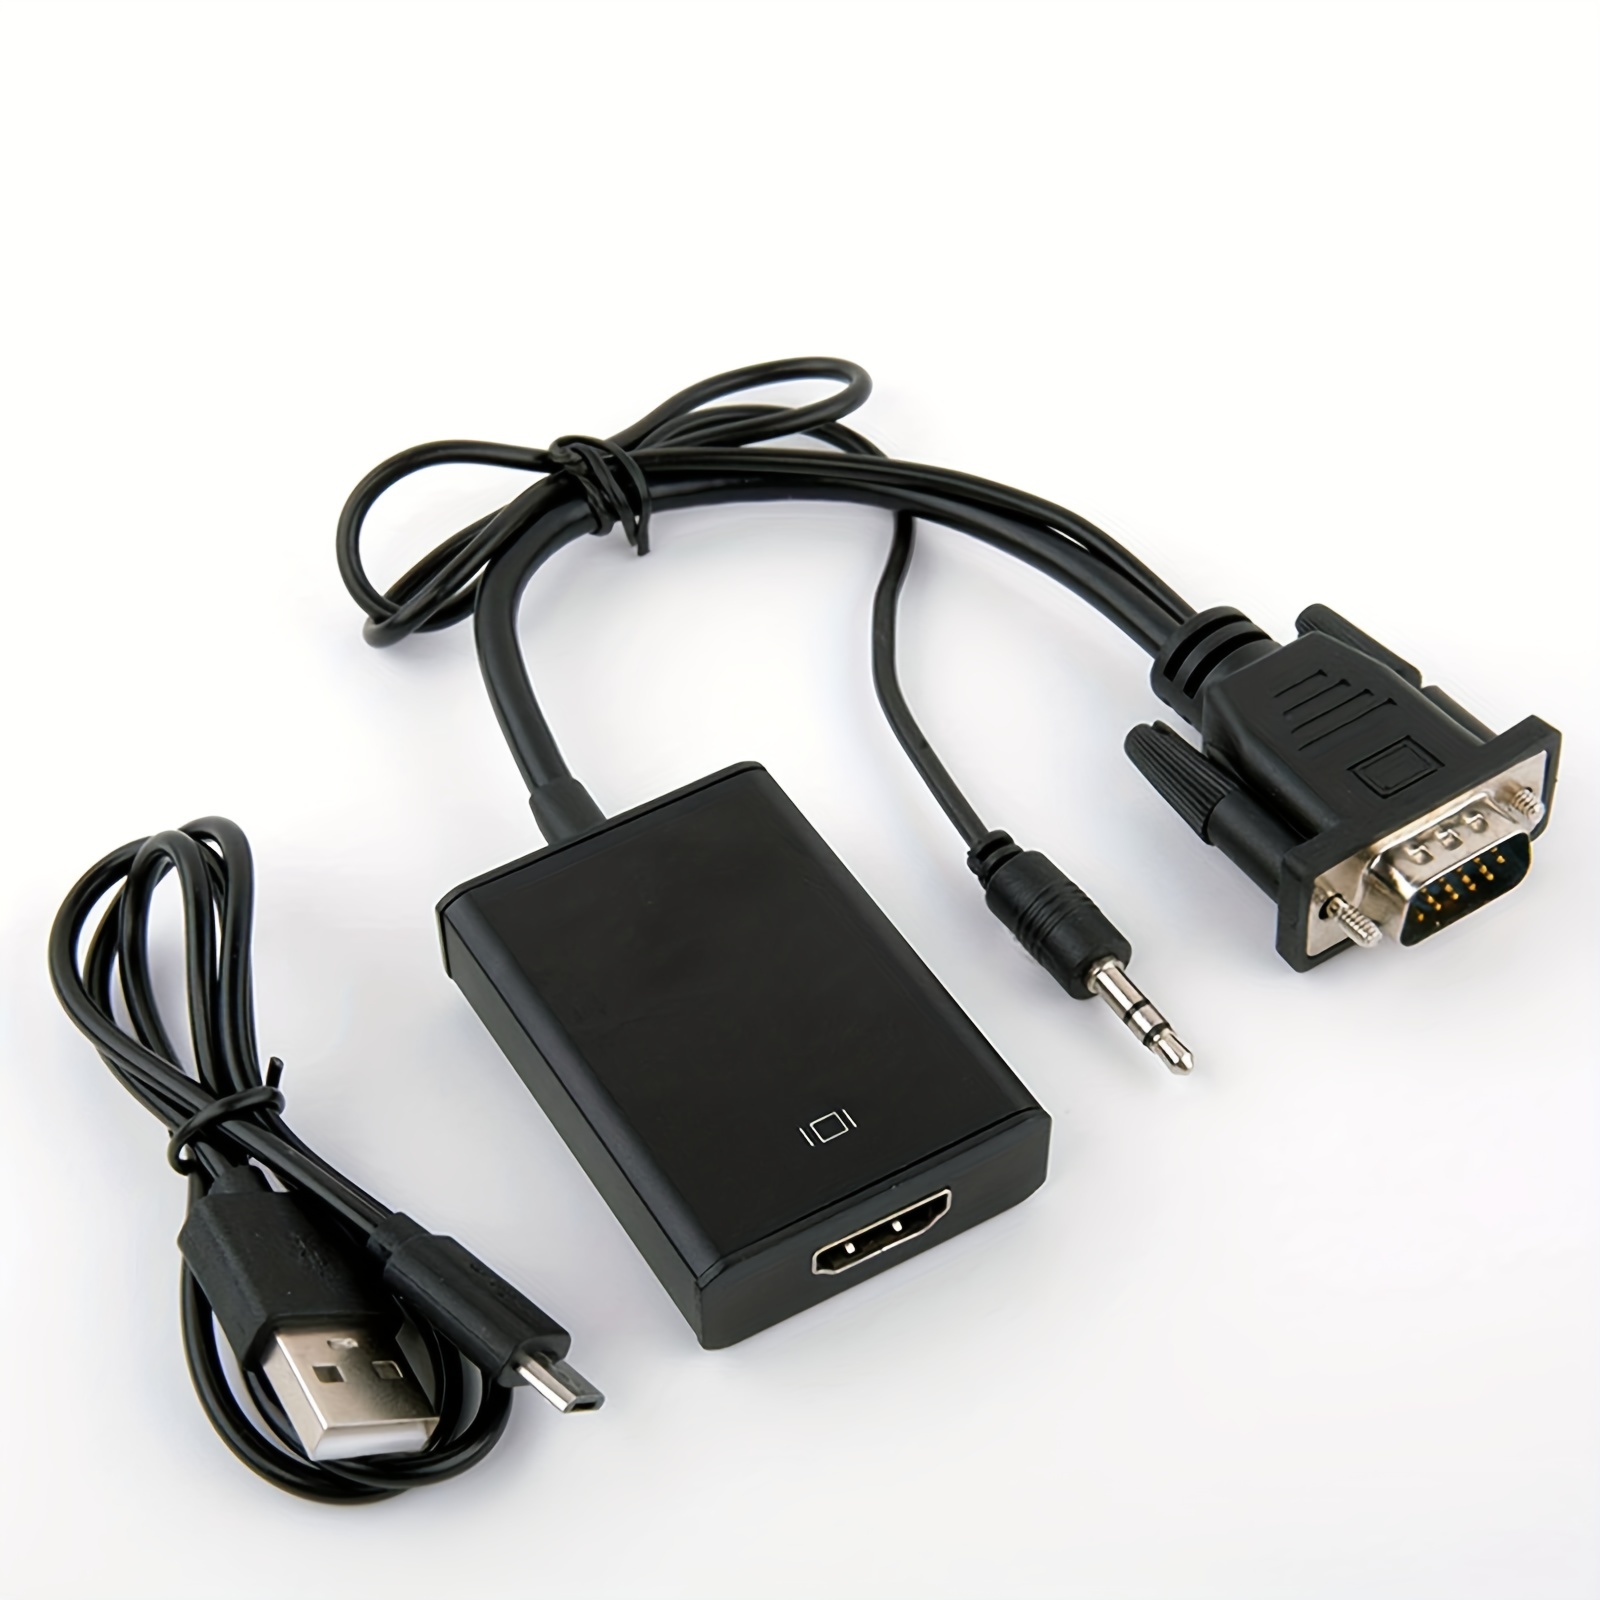 BENFEI - Cable HDMI a VGA de 3 pies, cable unidireccional HDMI (fuente) a  VGA (pantalla) (macho a macho) compatible con computadora, computadora de